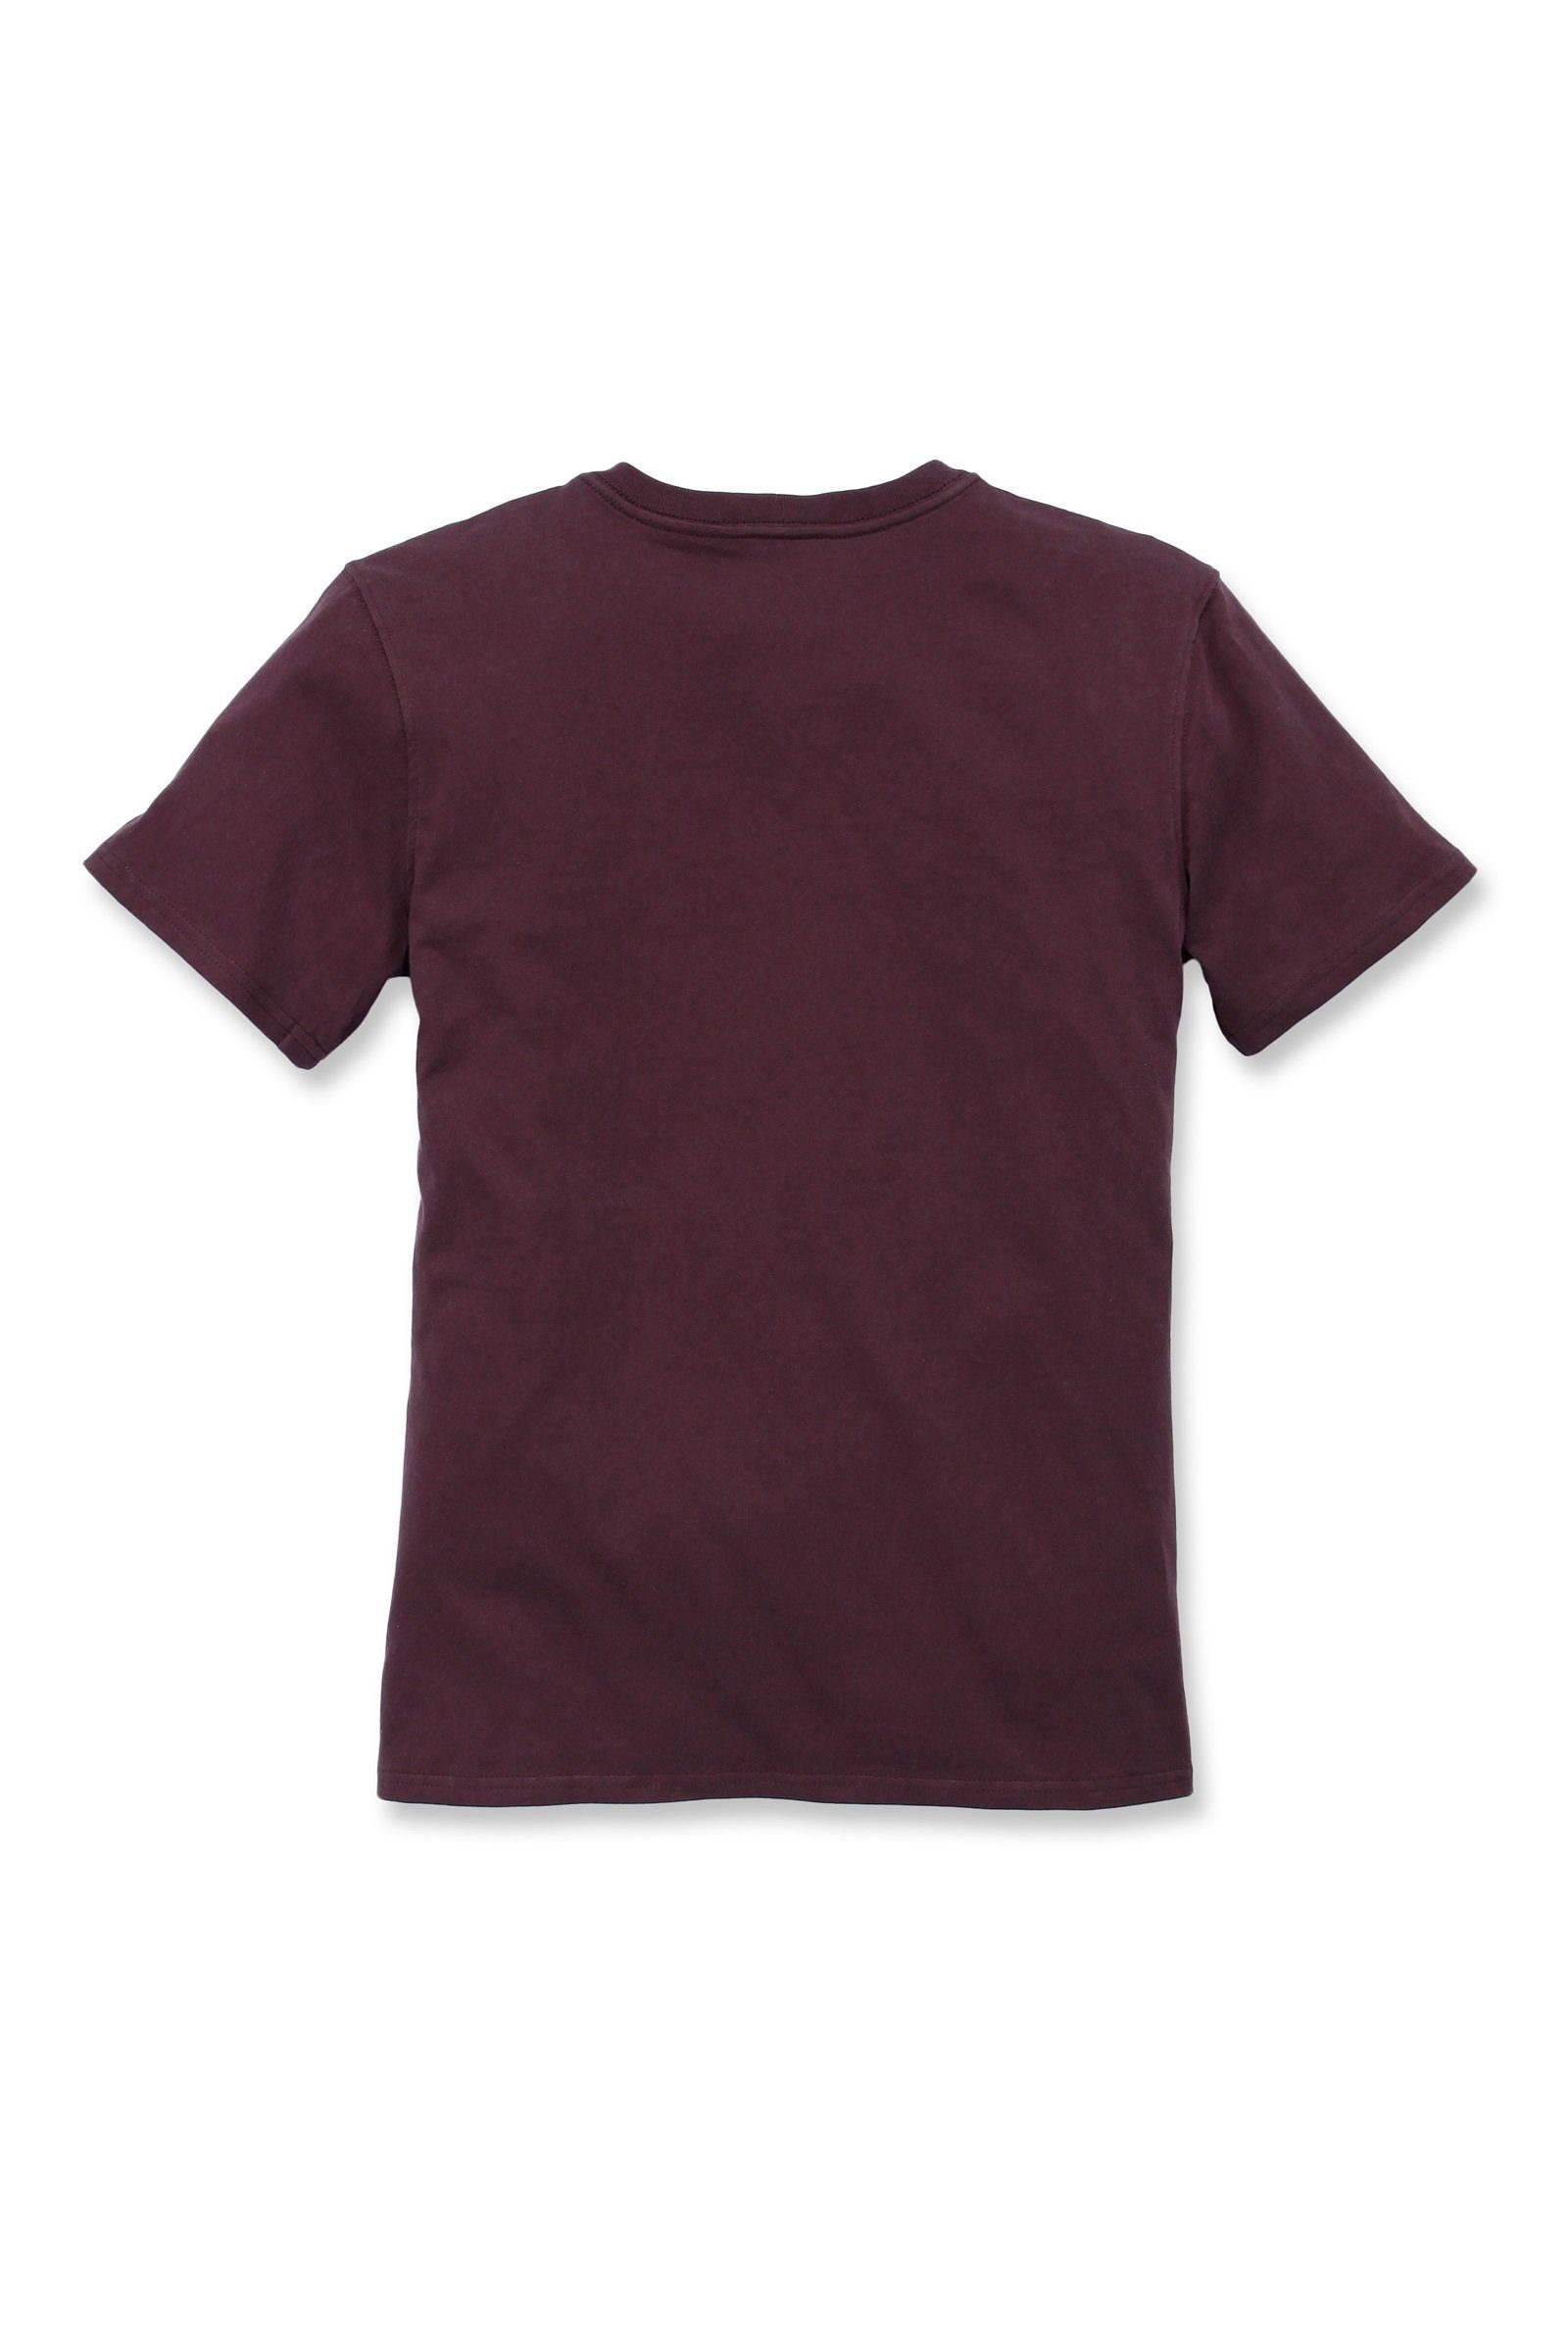 Short-Sleeve Adult wine Carhartt Pocket Fit T-Shirt Carhartt deep T-Shirt Heavyweight Loose Damen